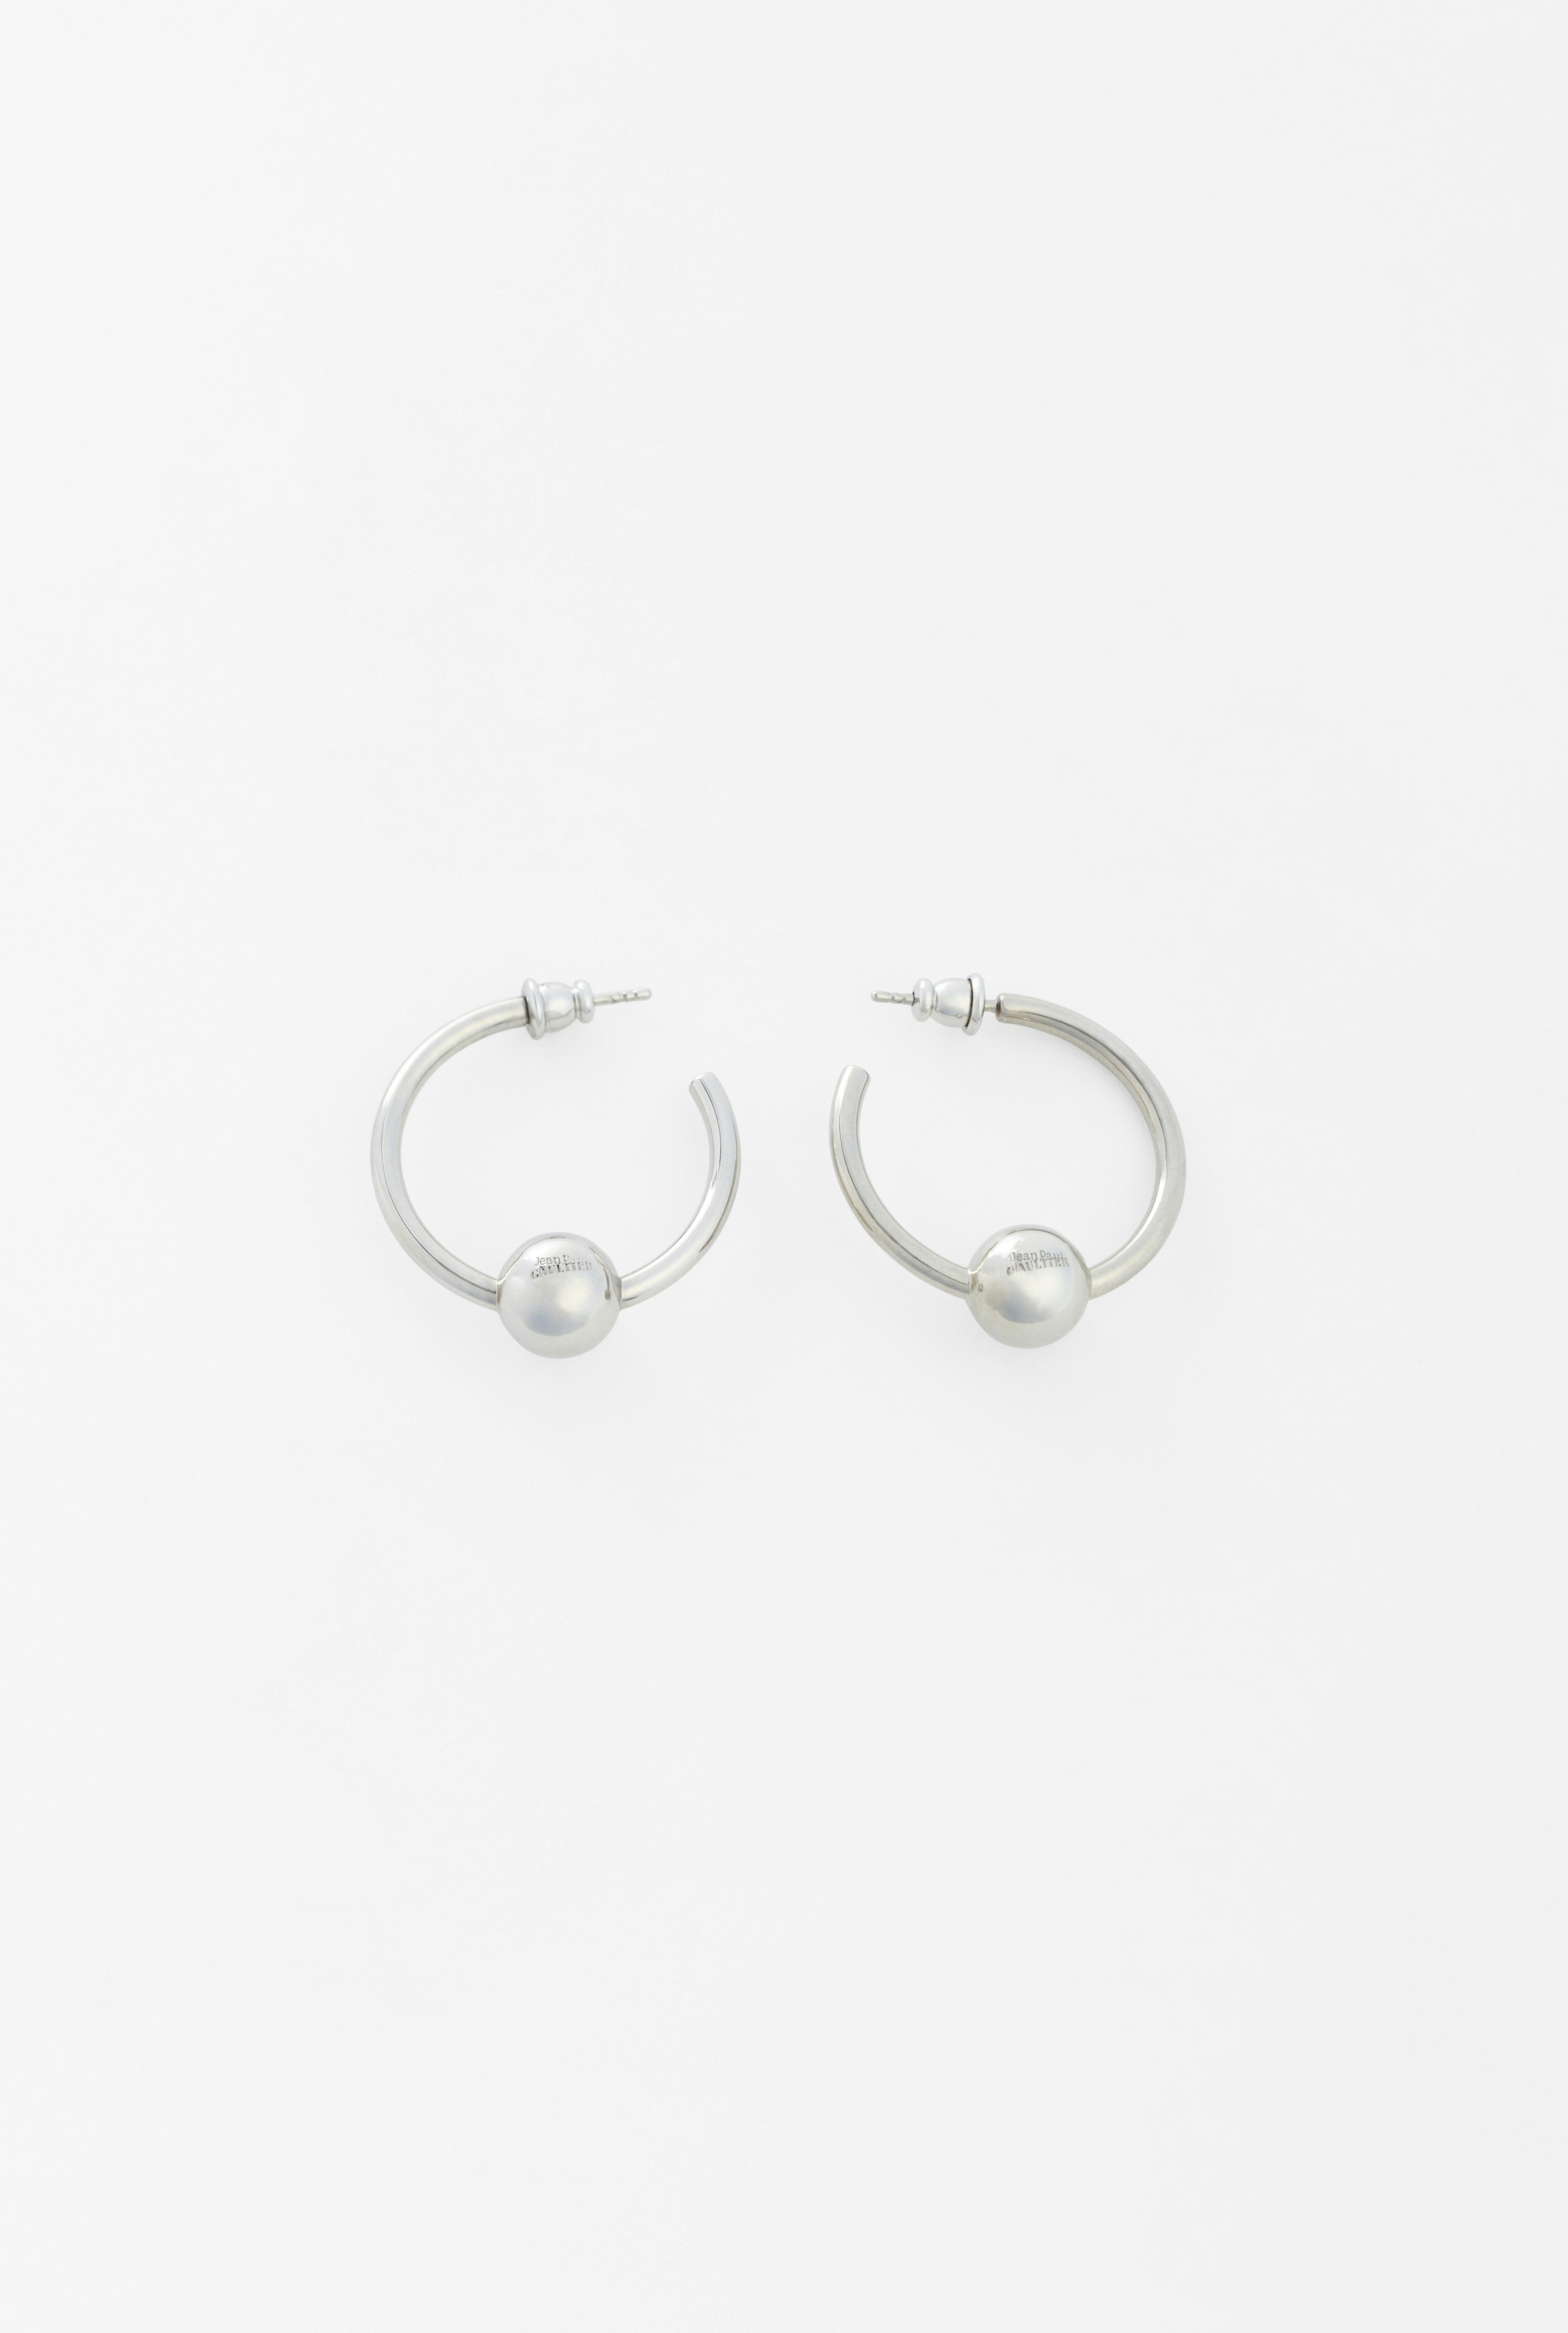 The Piercing earrings Jean Paul Gaultier